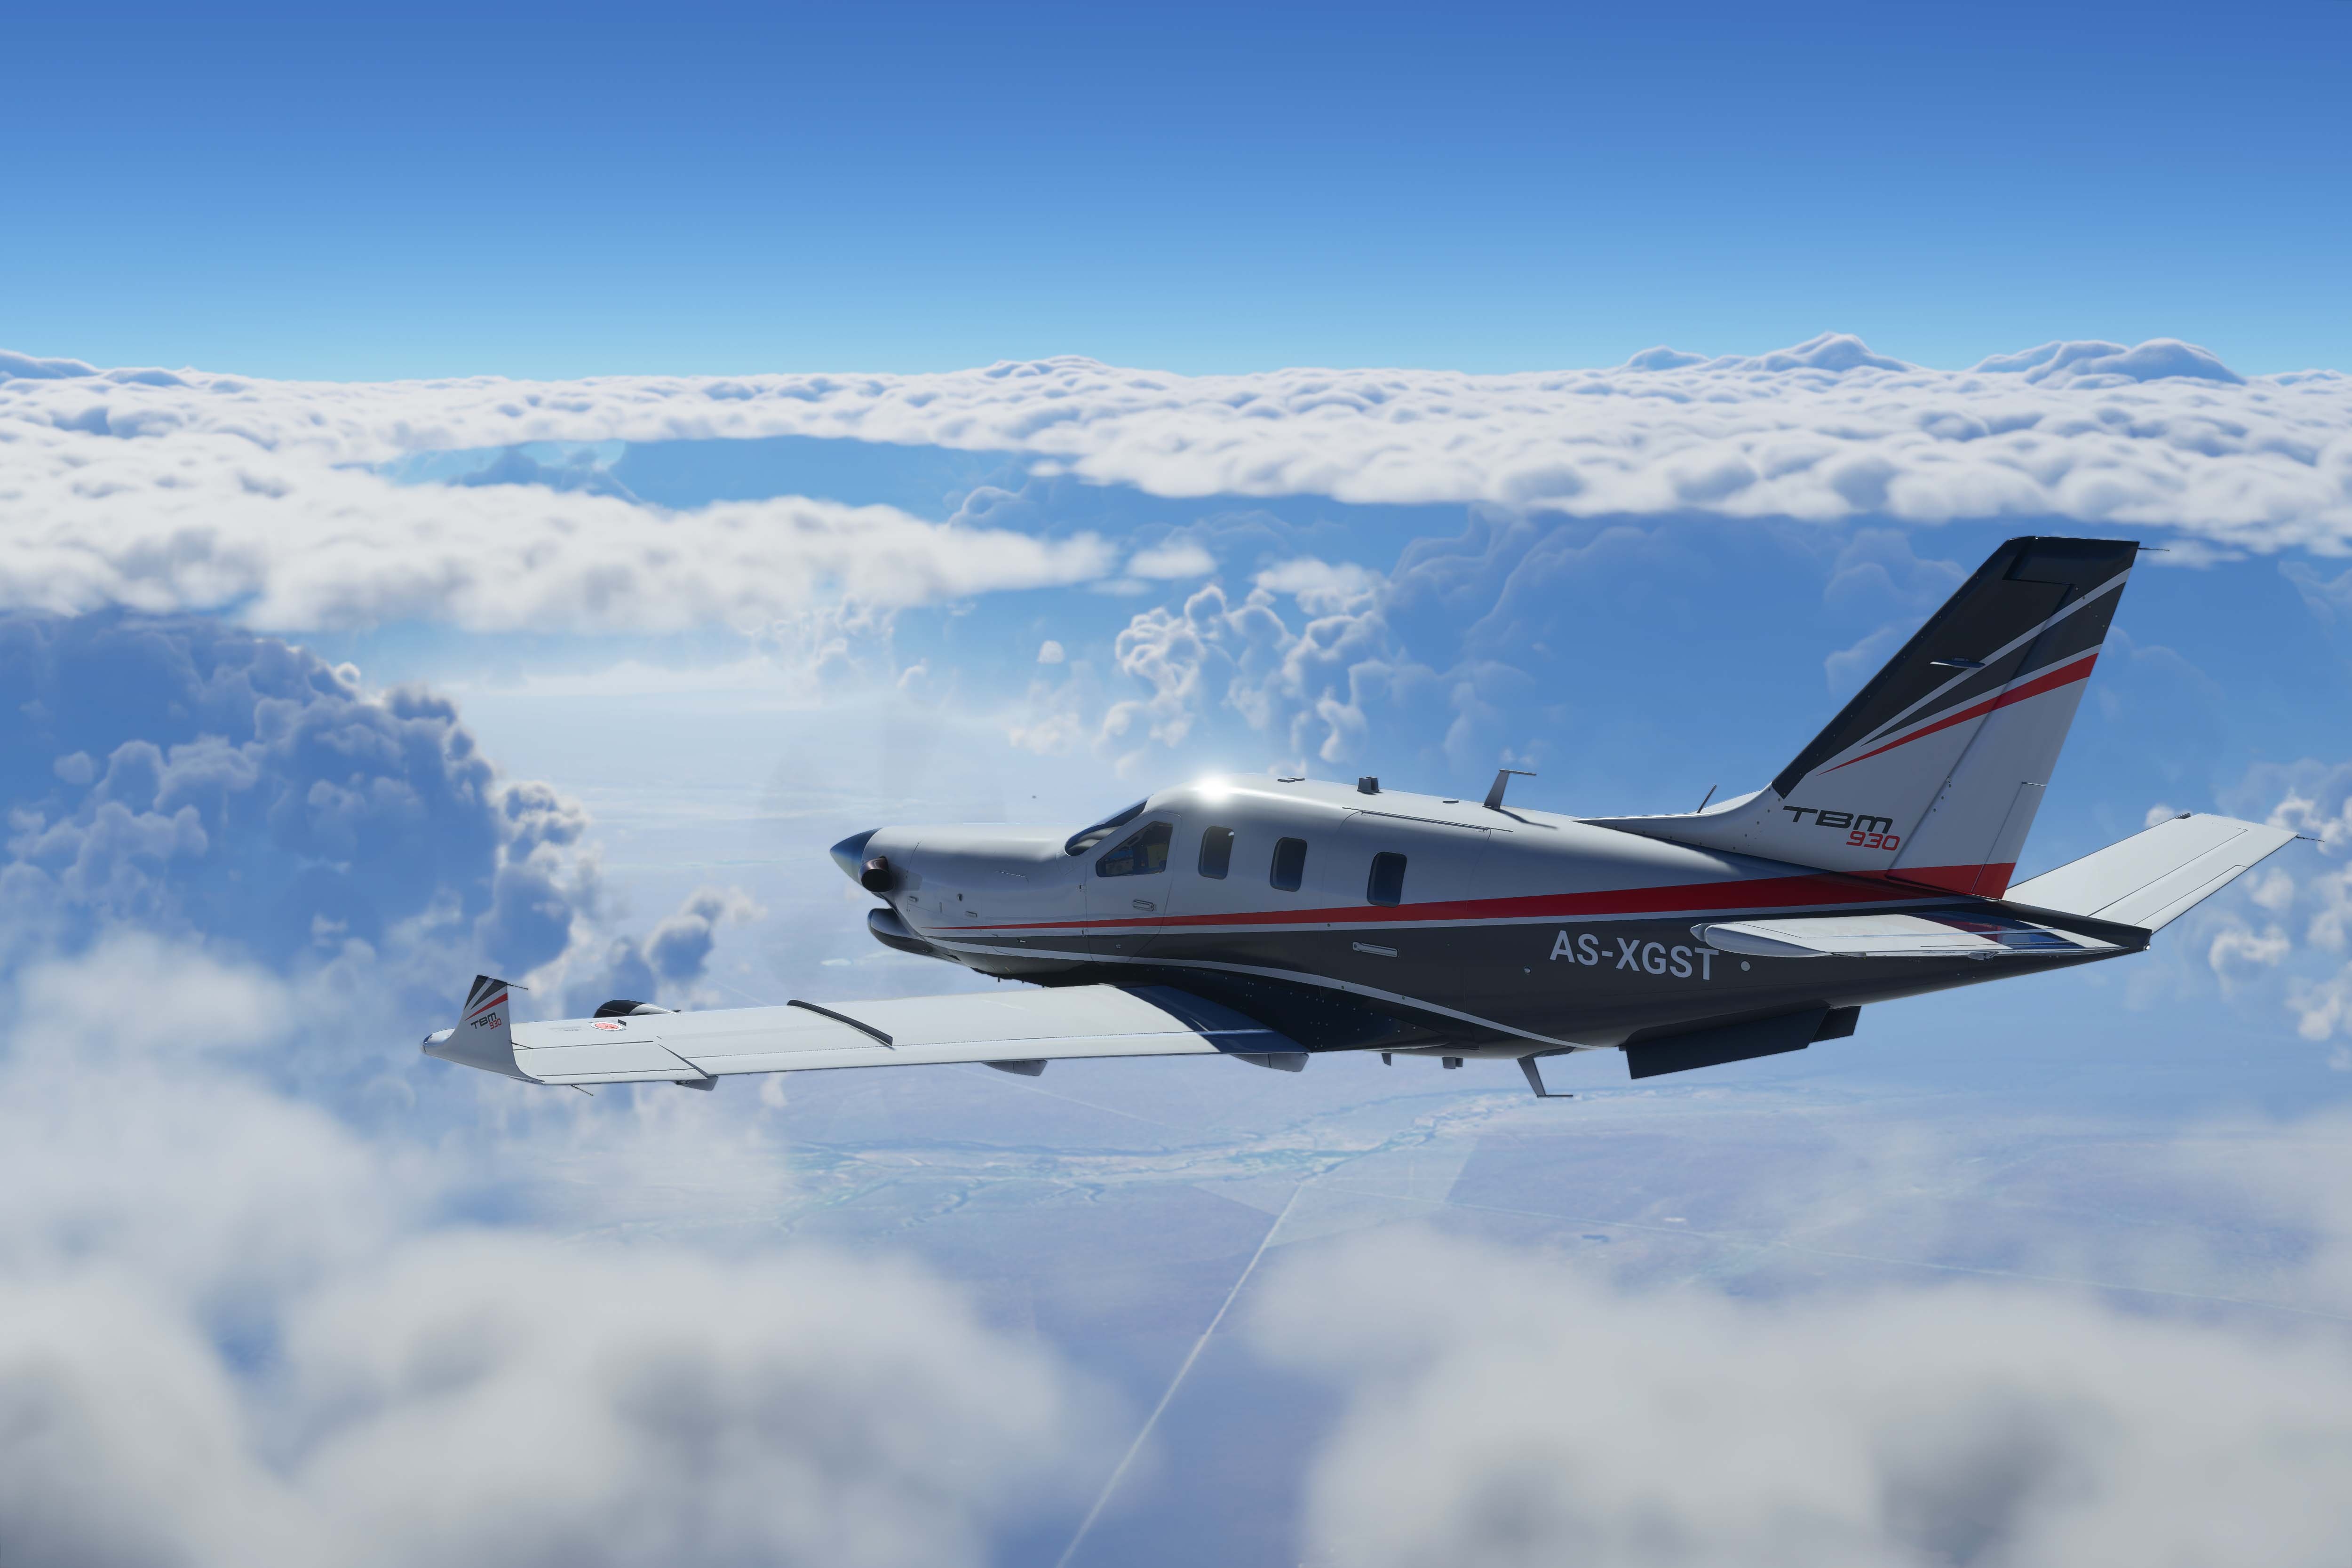  《微软飞行模拟》最新超高清截图赏析  